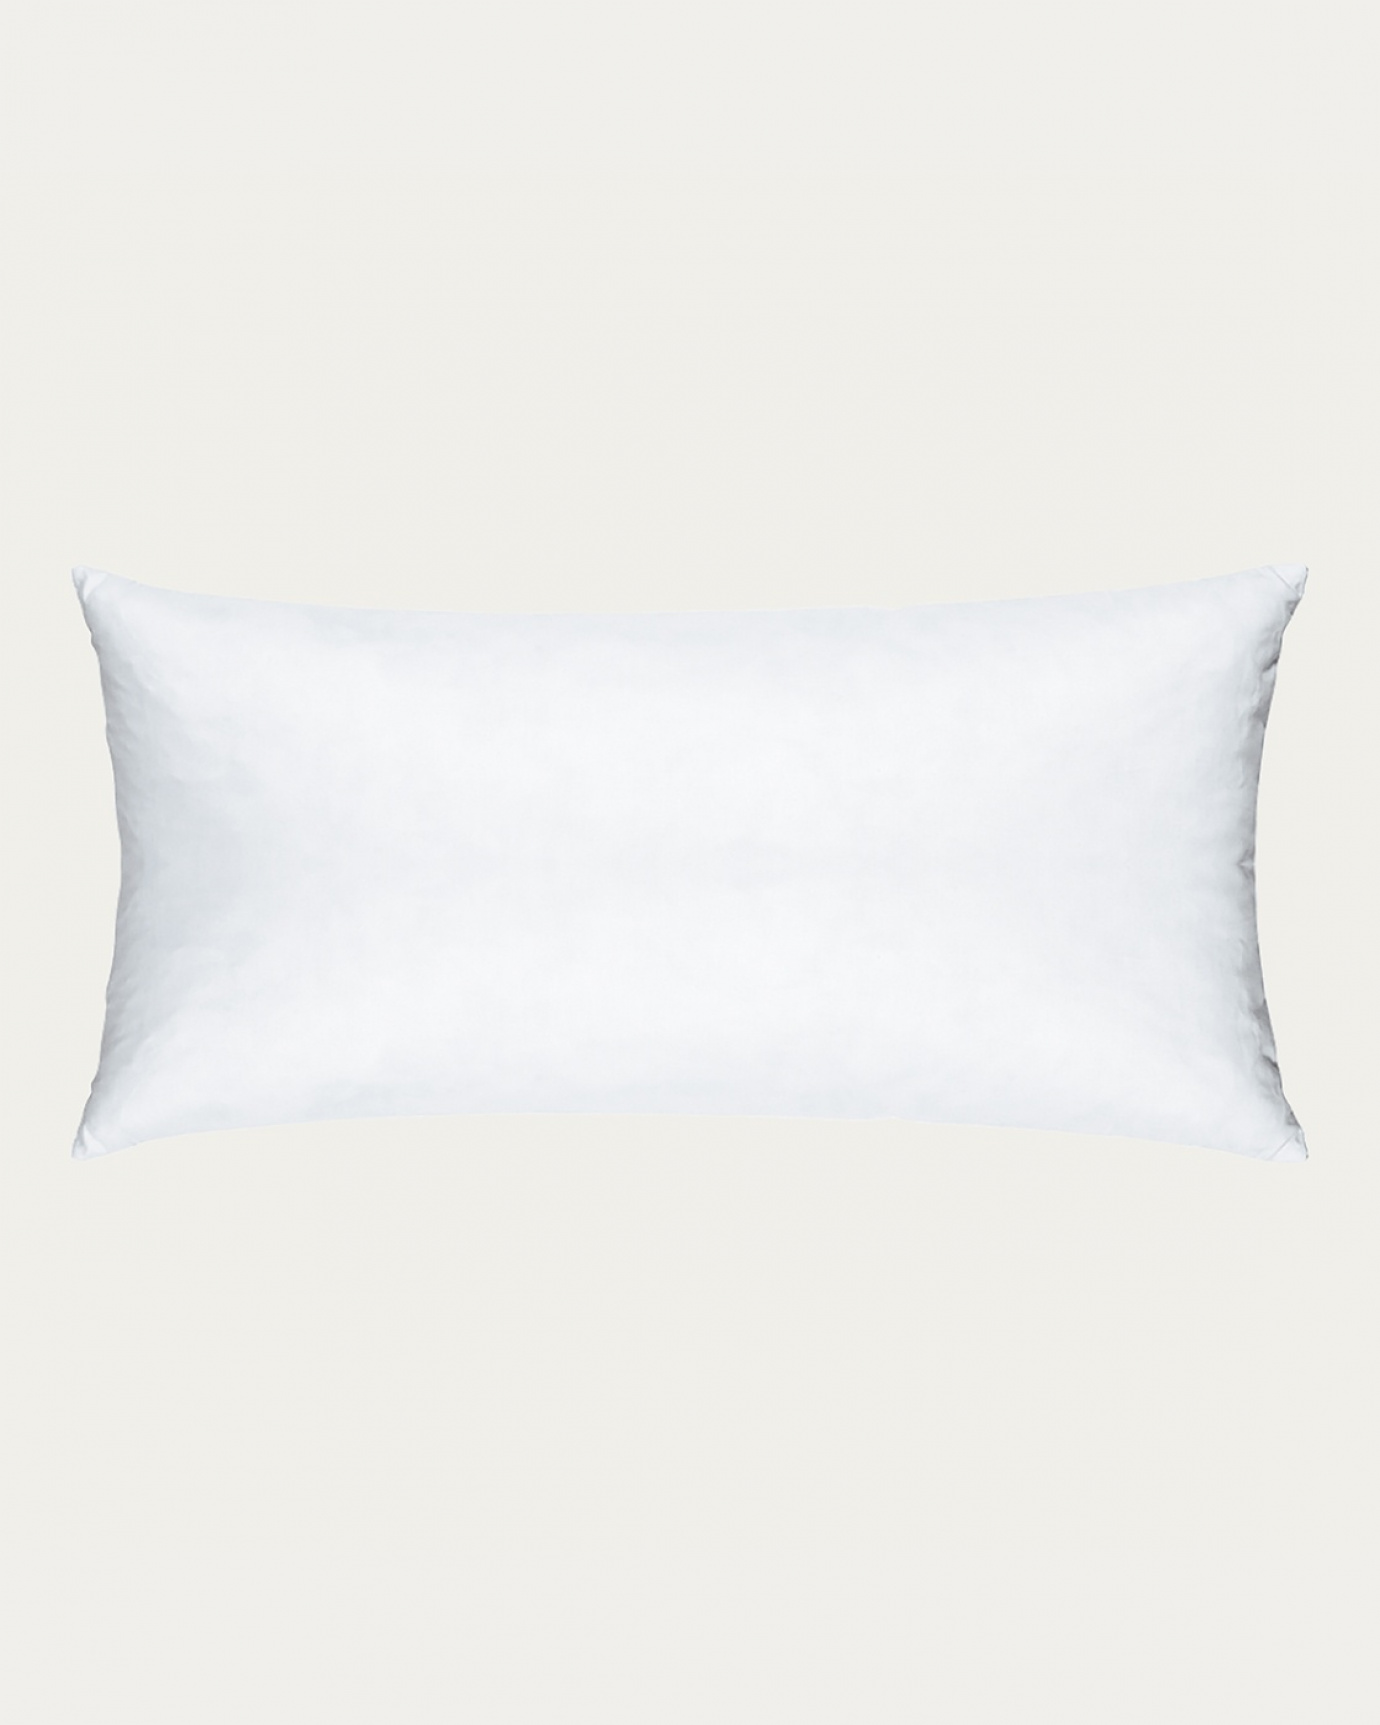 Immagine prodotto bianco FEATHER cuscini interni in cotone con imbottitura in piuma di LINUM DESIGN. Dimensioni 35x70 cm.